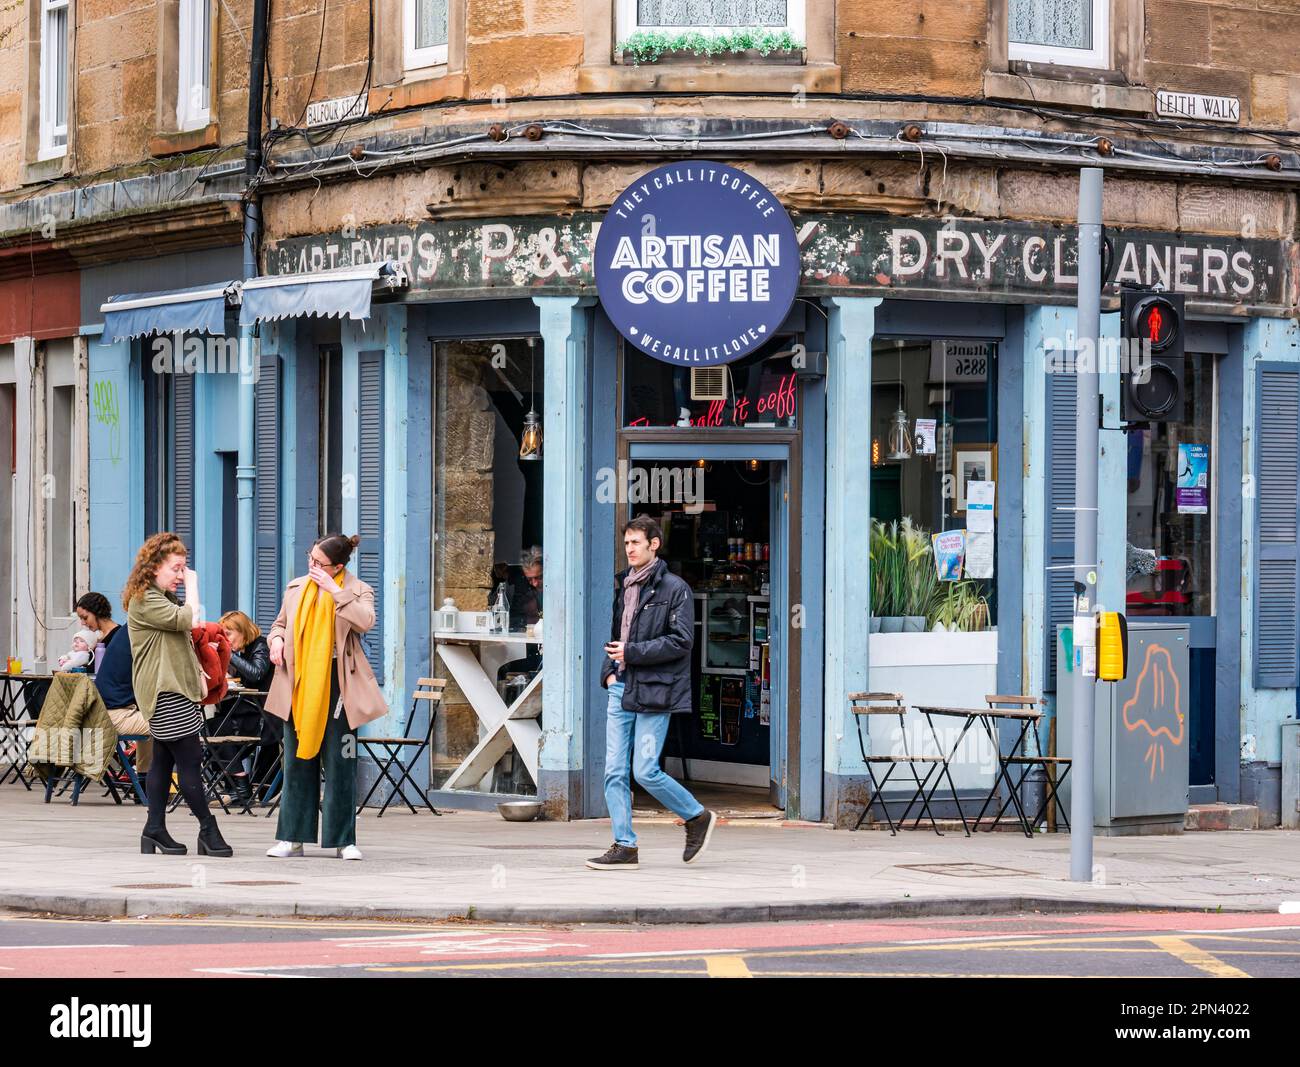 Personnes aux tables de pavement dans un café artisanal avec panneau fantôme de nettoyage à sec, leith Walk, Édimbourg, Écosse, Royaume-Uni Banque D'Images